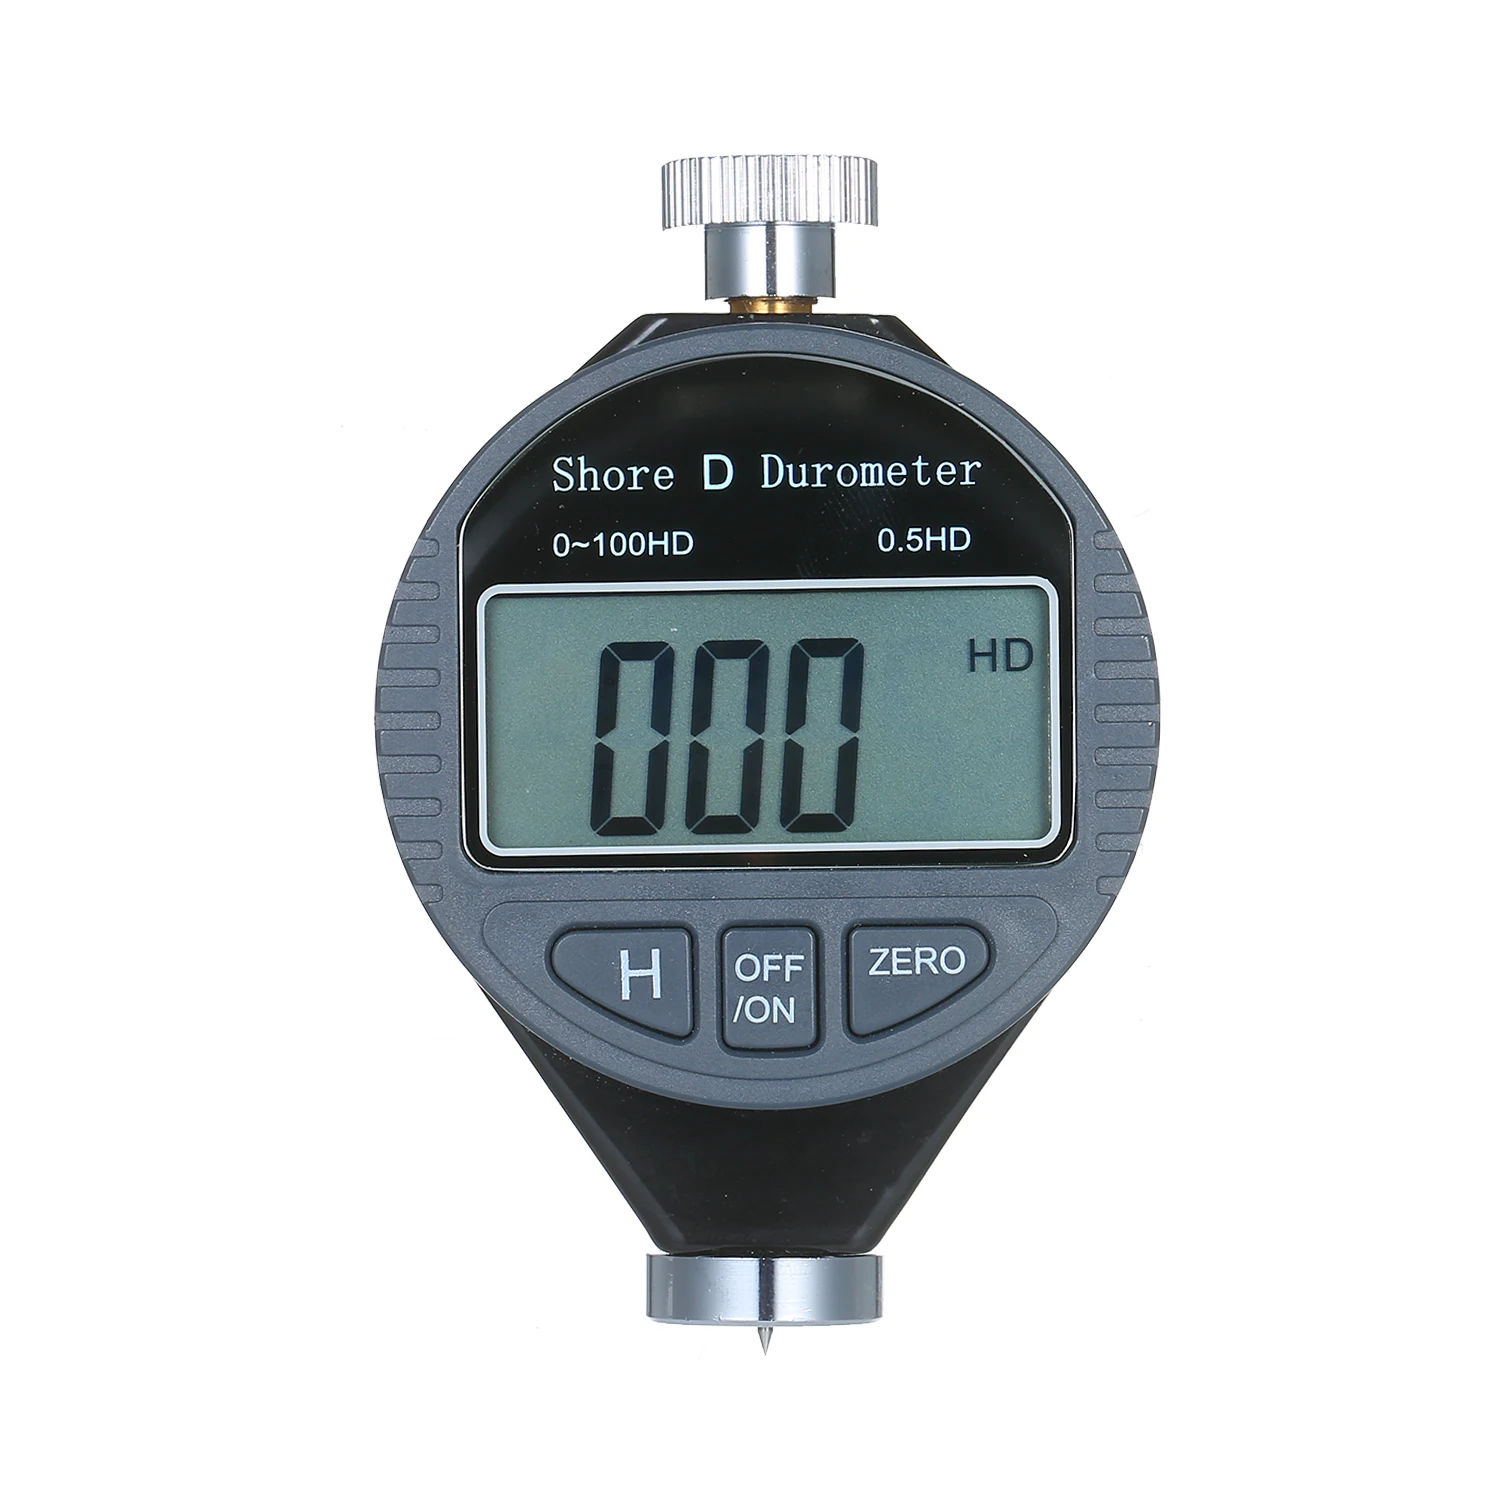 Цифровой Твердомер портативный 0-100HD Shore D Измеритель Твердости весы для резиновых шин пластиковые полы с большим ЖК-дисплеем